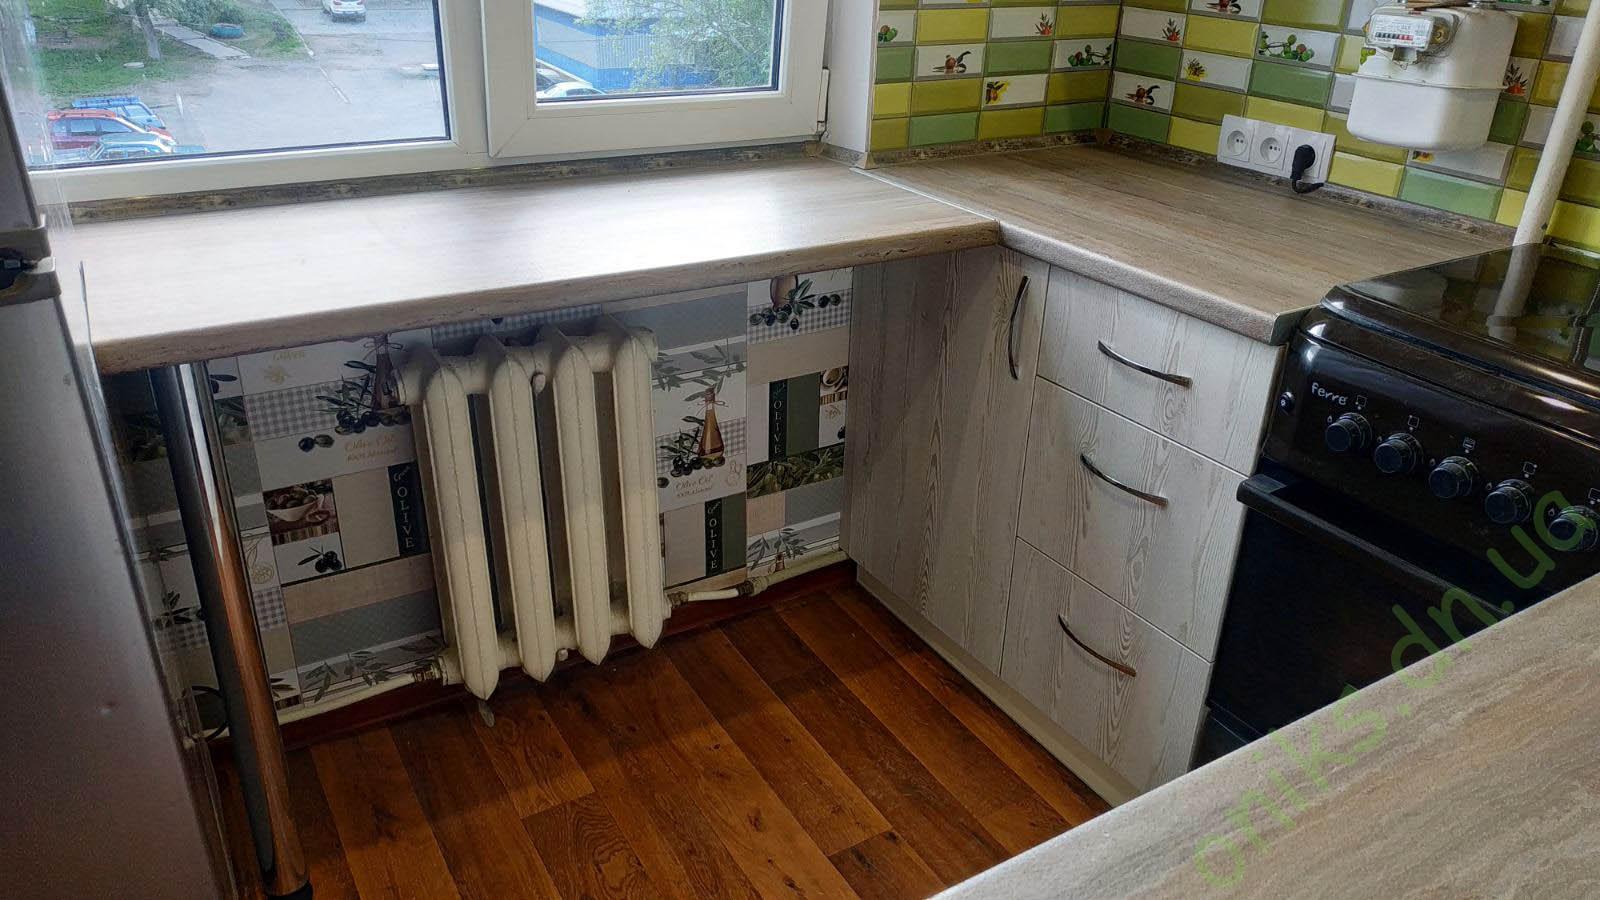 Купить кухню угловую со встроенной столешницей под окном в Донецке